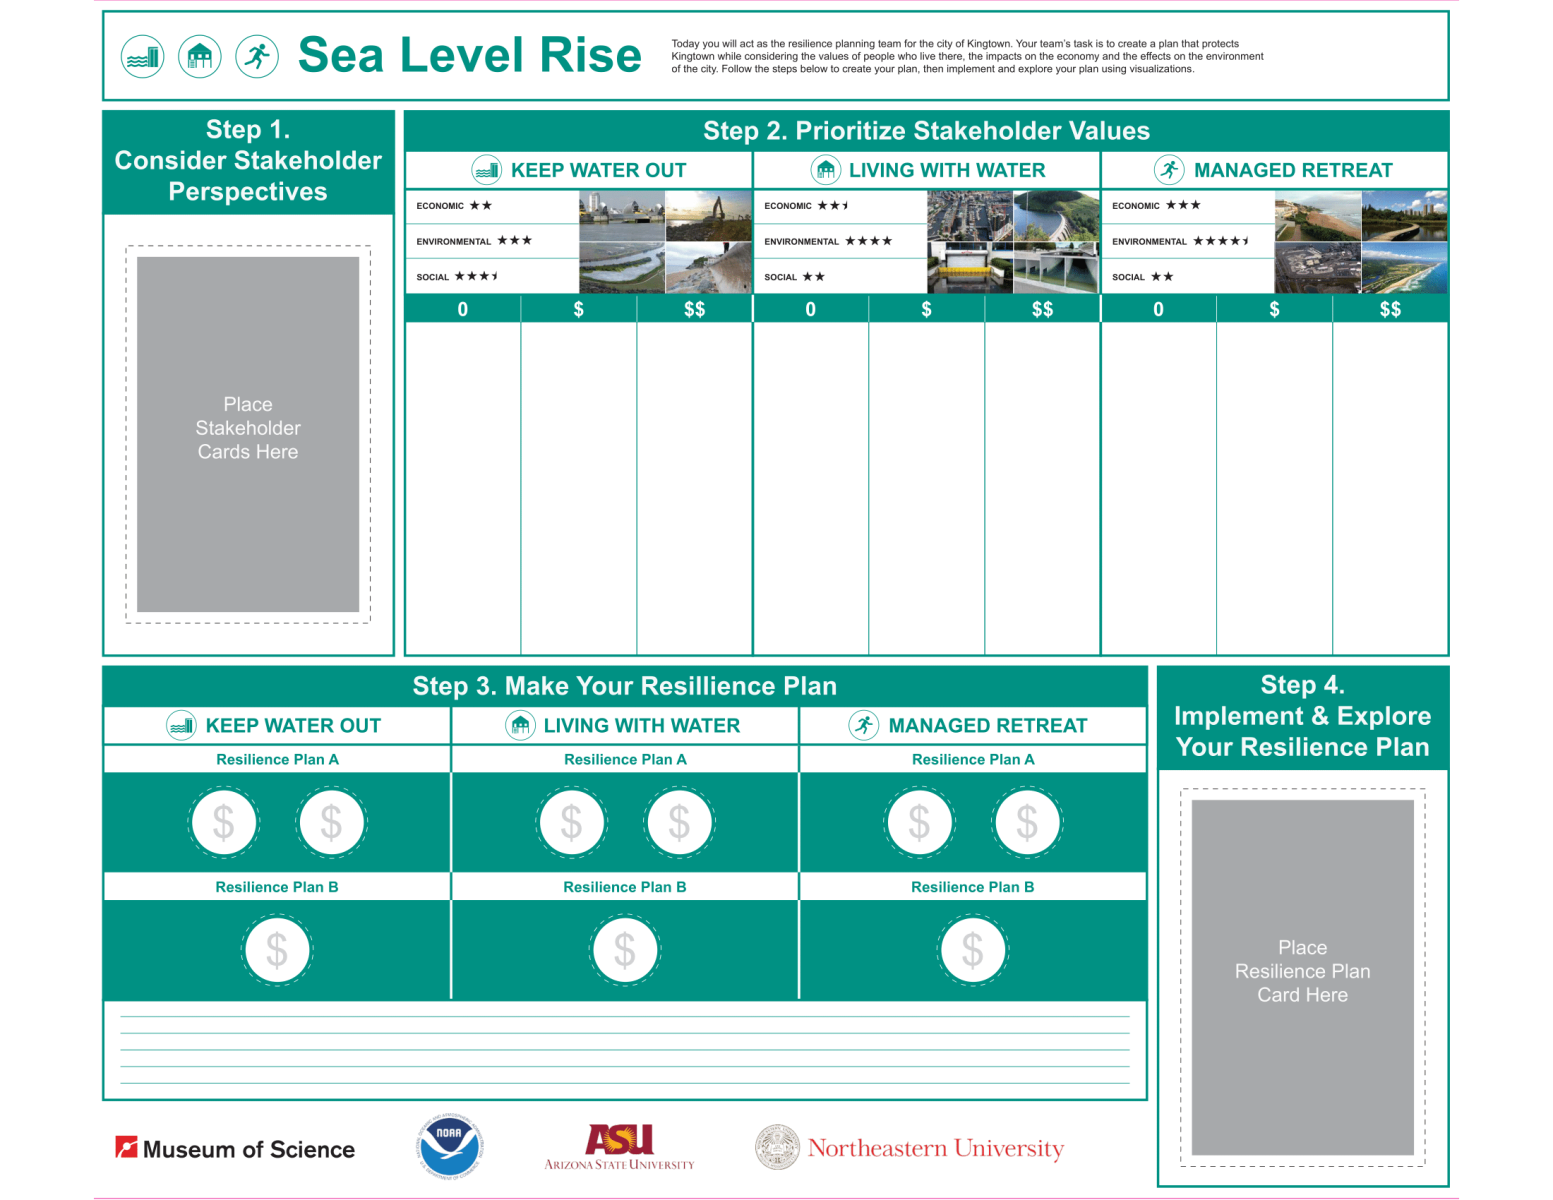 CSCRC Sea Level Rise board